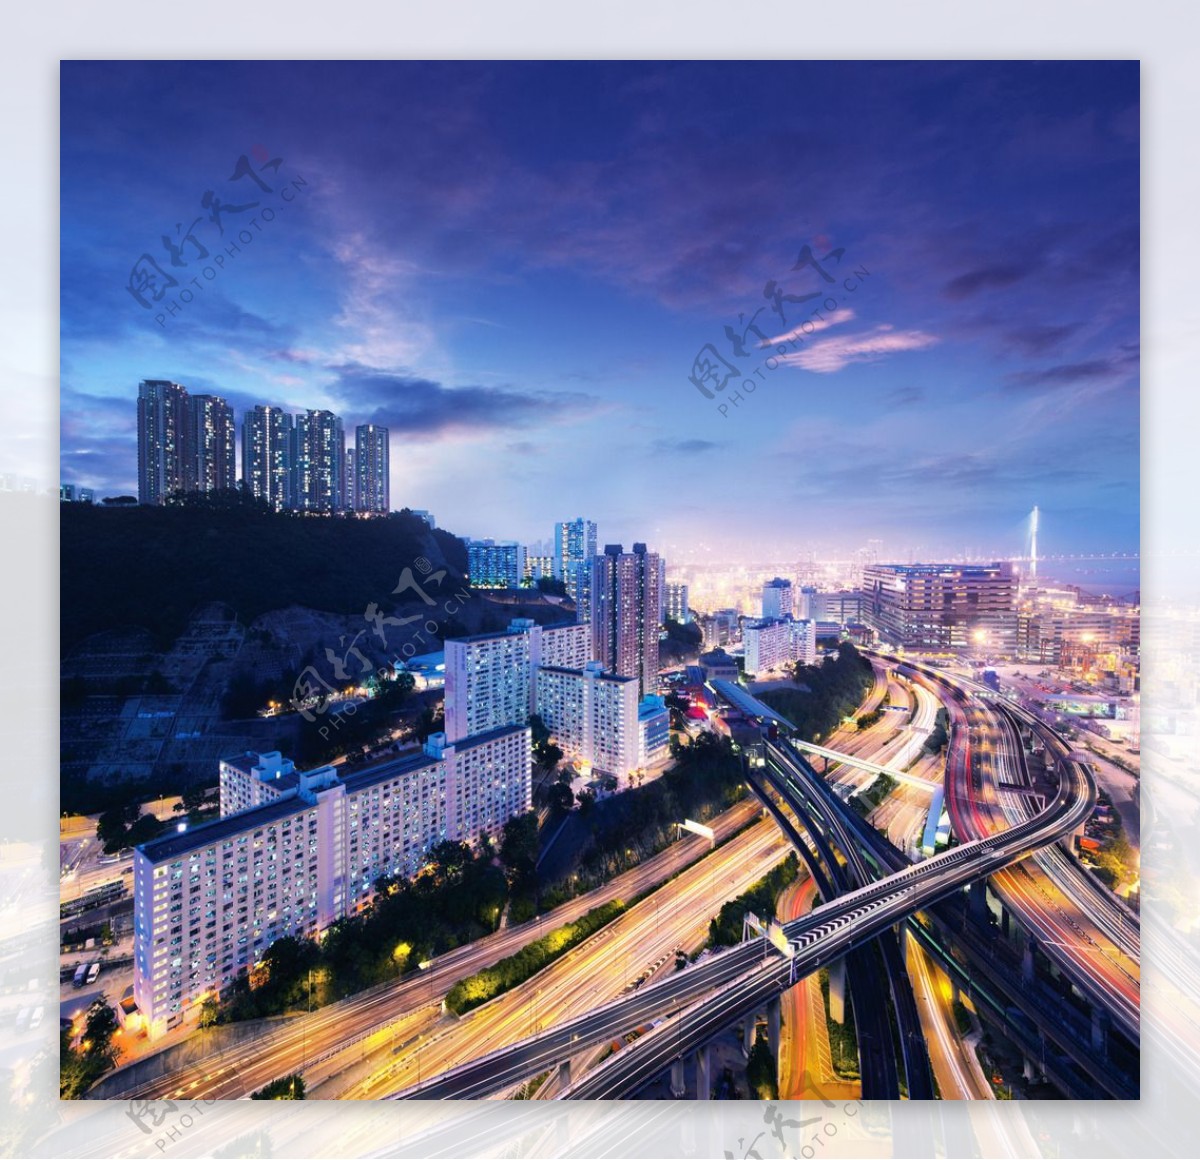 香港金融城市发展